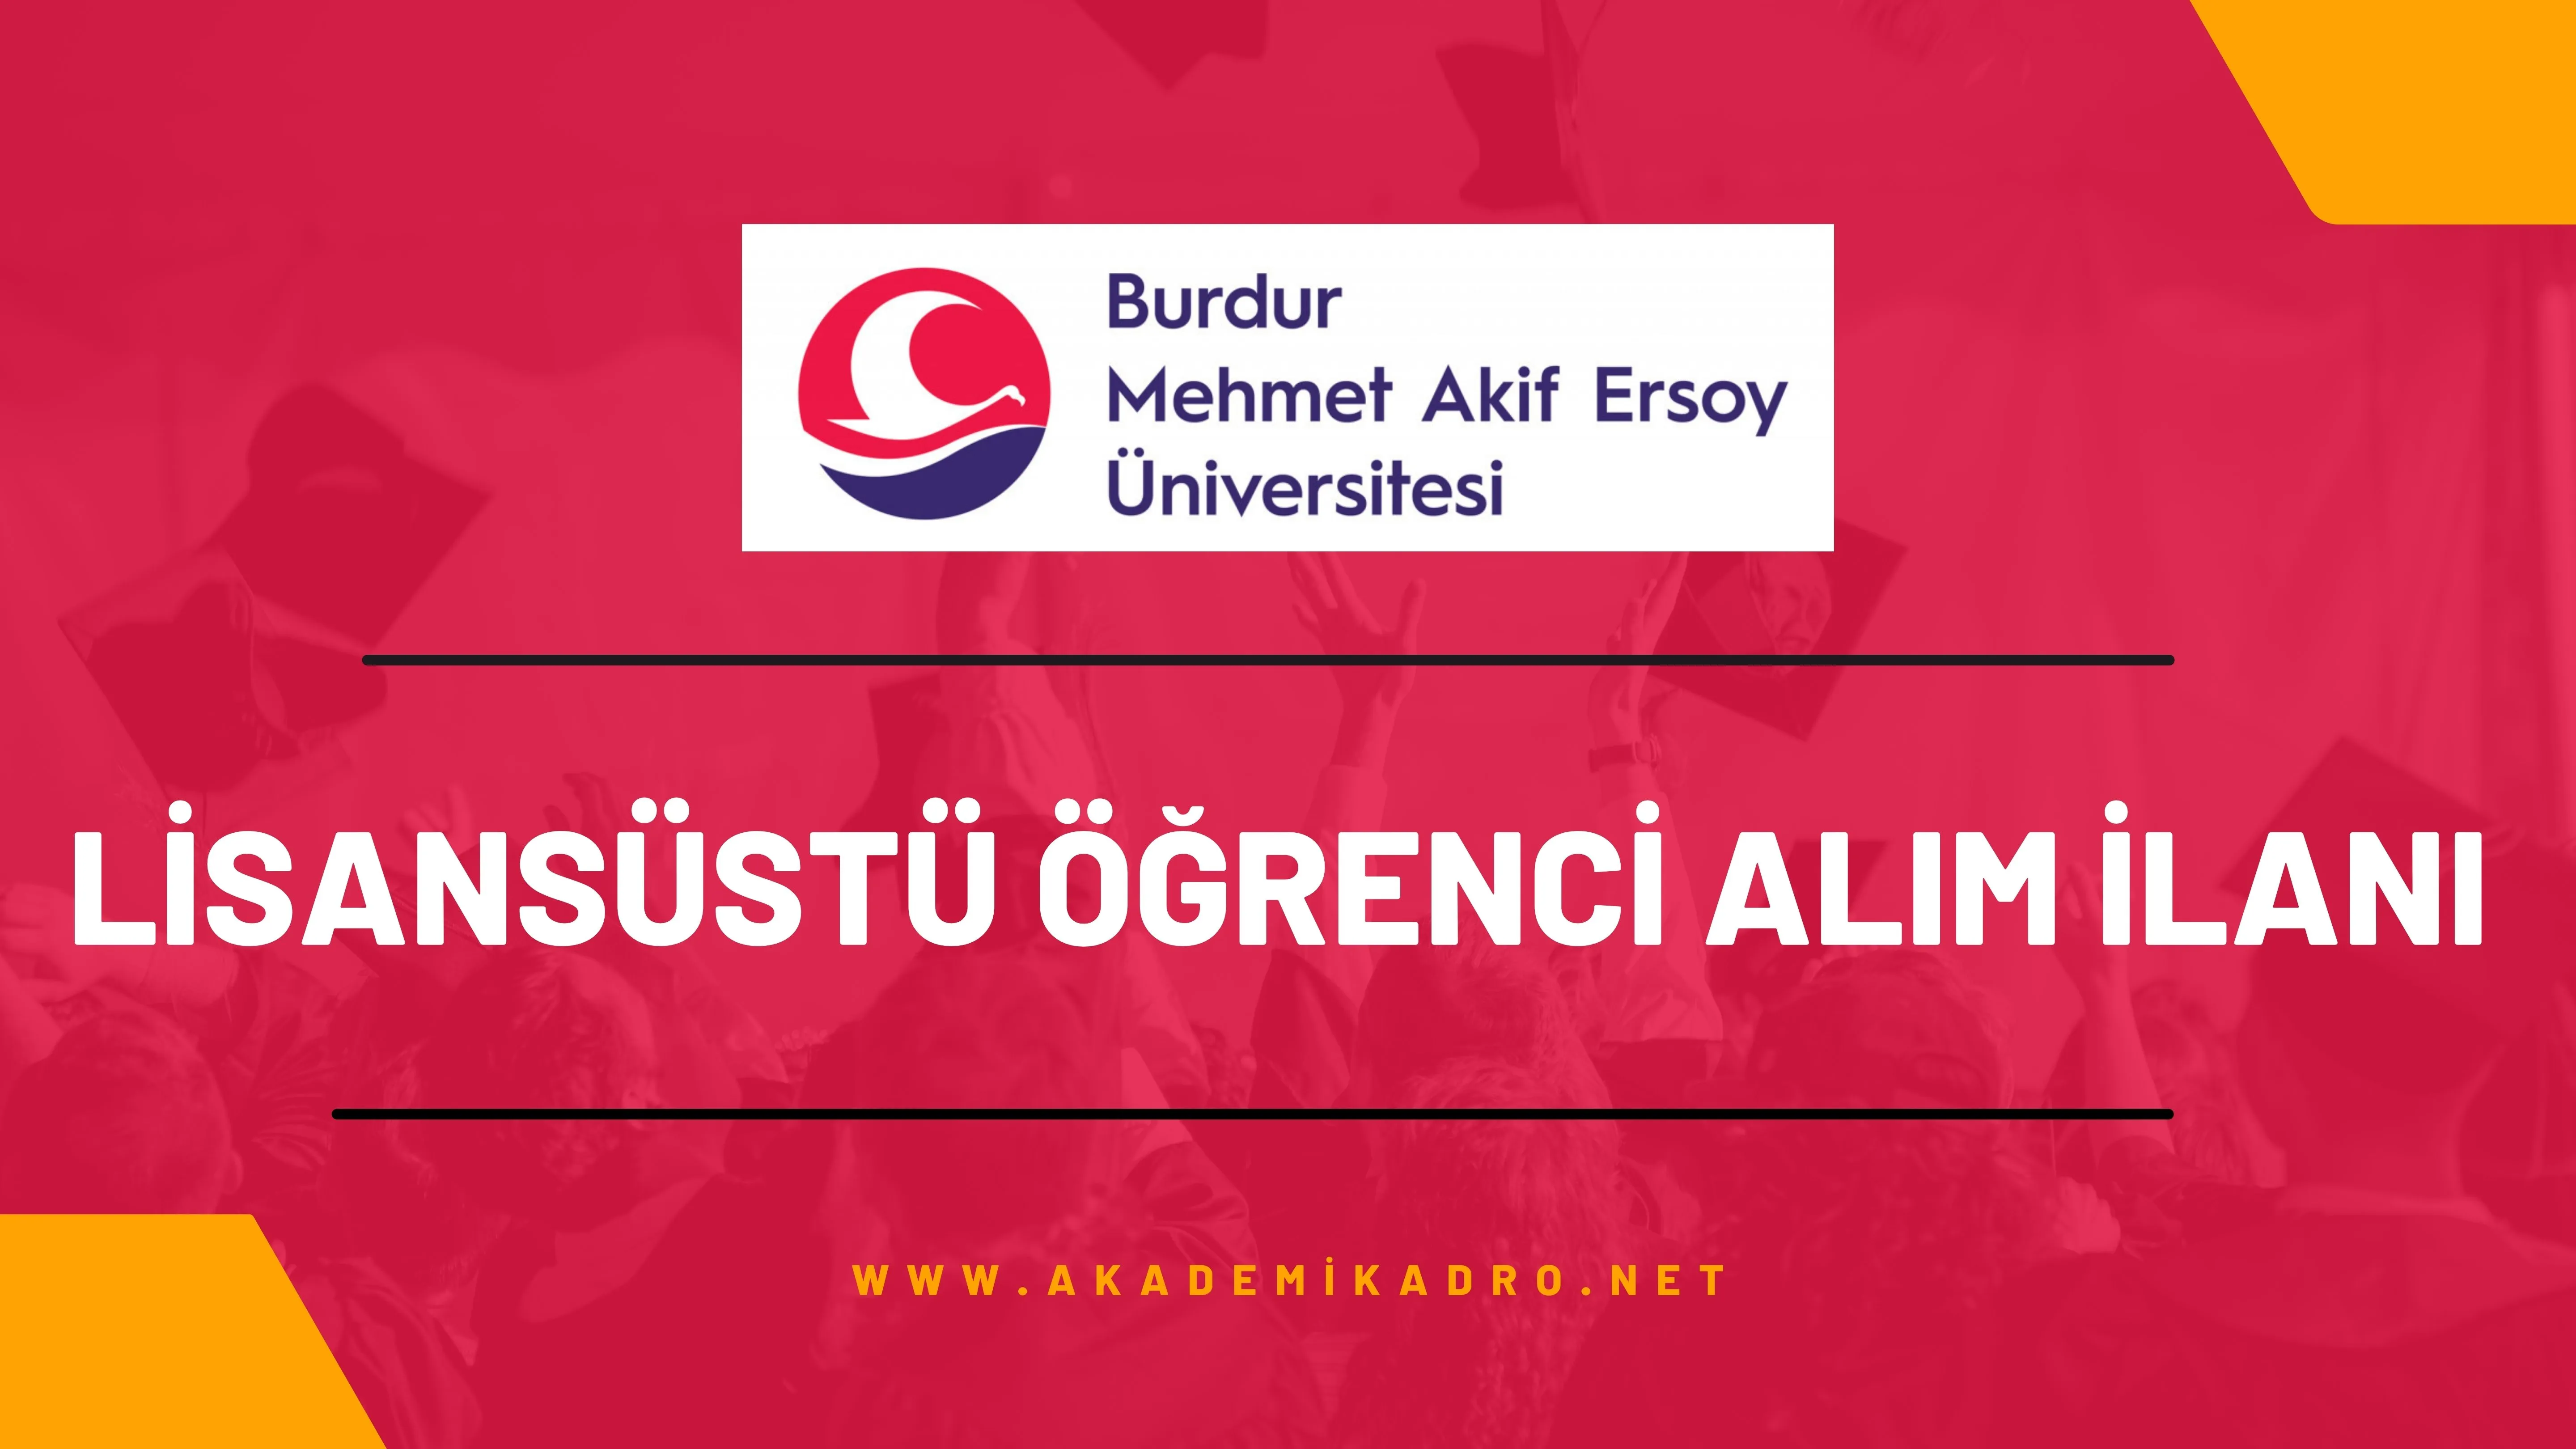 Burdur Mehmet Akif Ersoy Üniversitesi 2022-2023 bahar döneminde lisansüstü programlara öğrenci alacaktır.